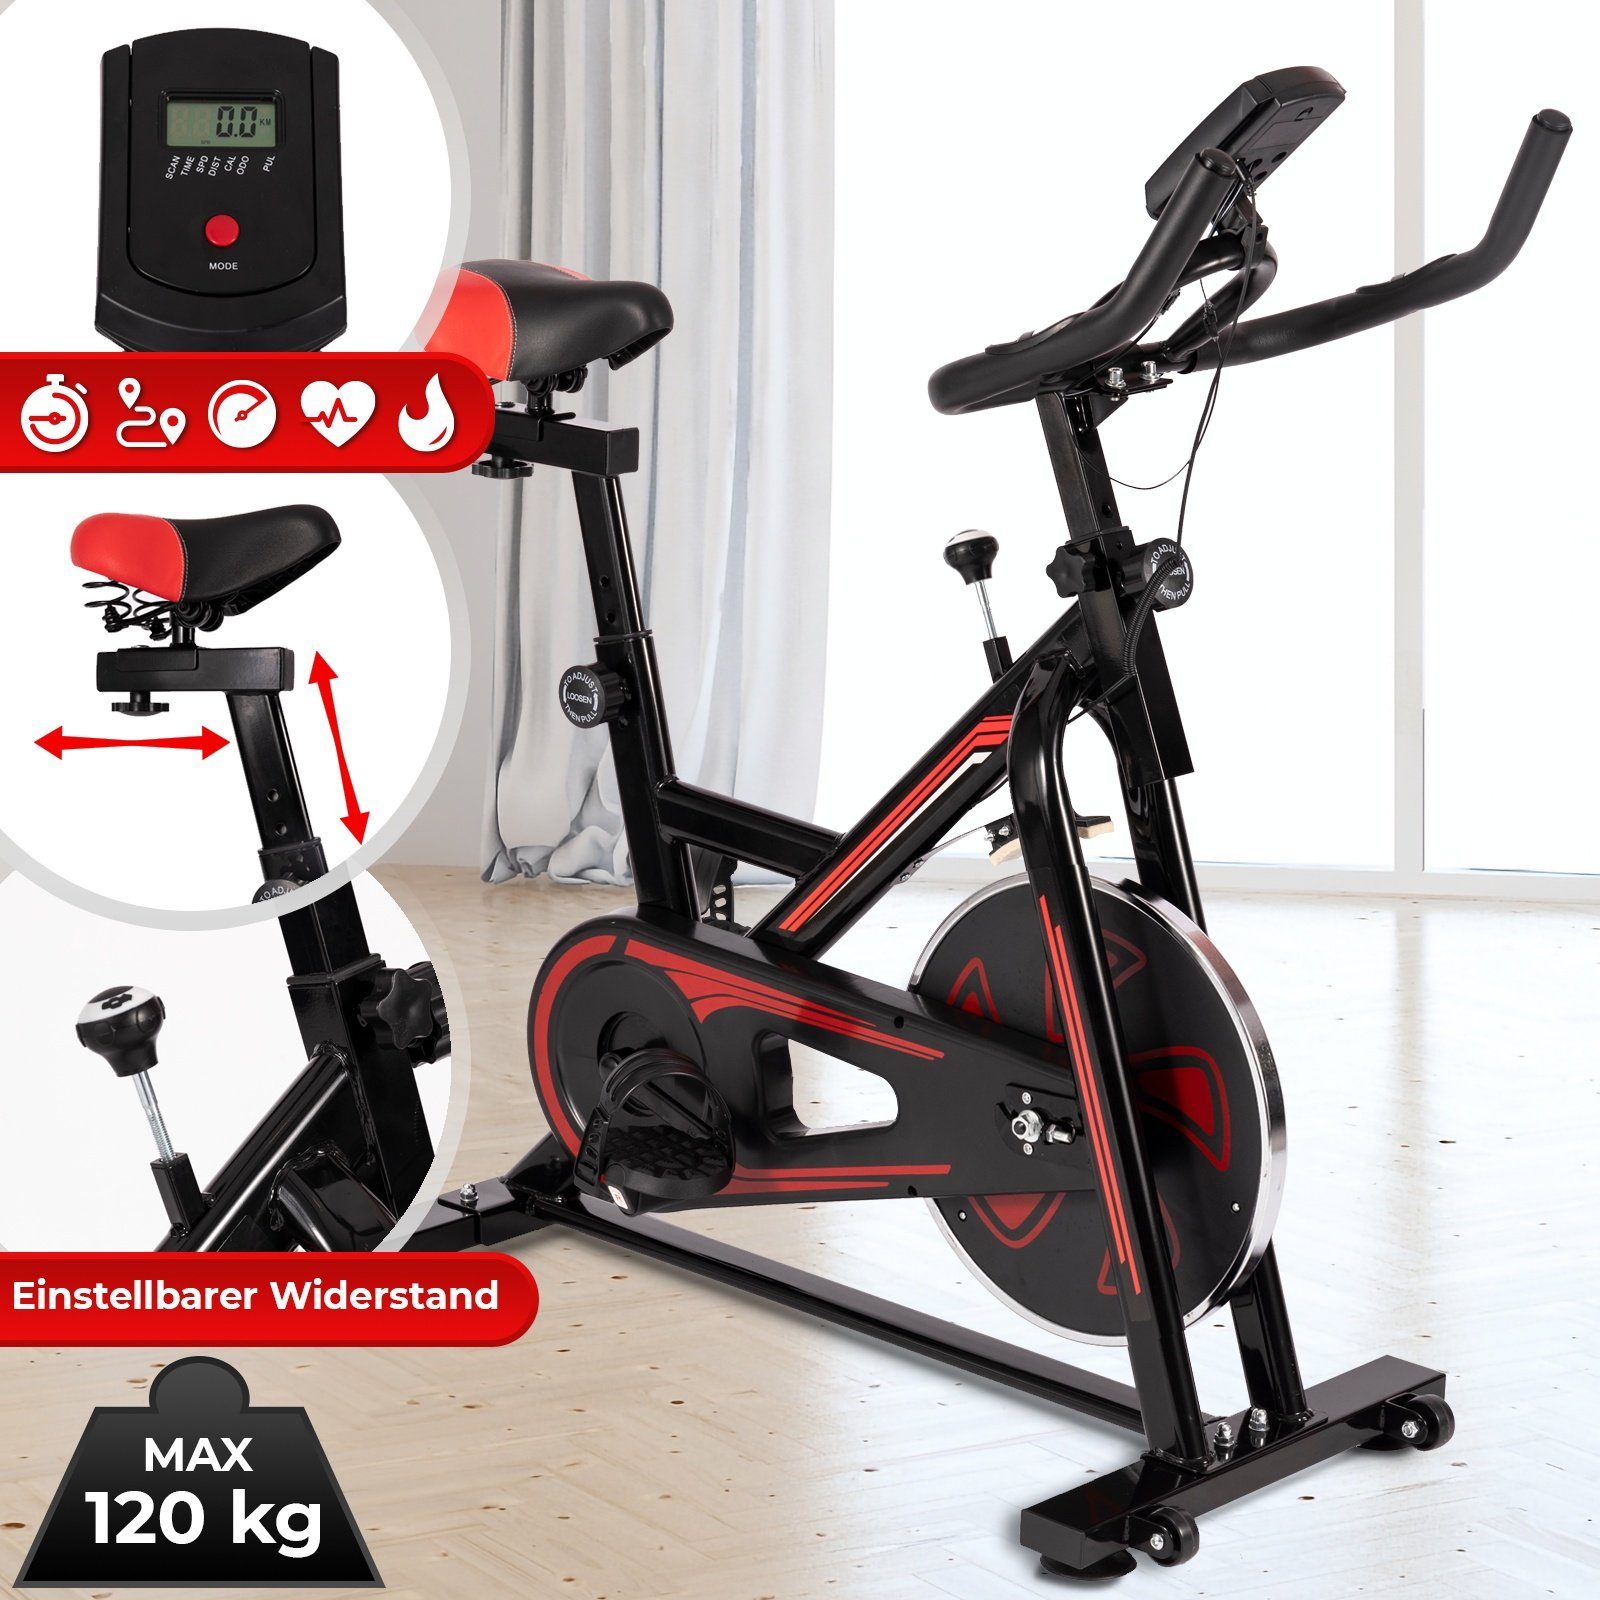 VENDOMNIA Heimtrainer Fitnessbike mit LCD Display (Pulsmesser, Sitz und  Griff verstellbar, max 120 kg), Fahrrad, Fahrradtrainer, Fitnessfahrrad,  Indoor Cycling Bike